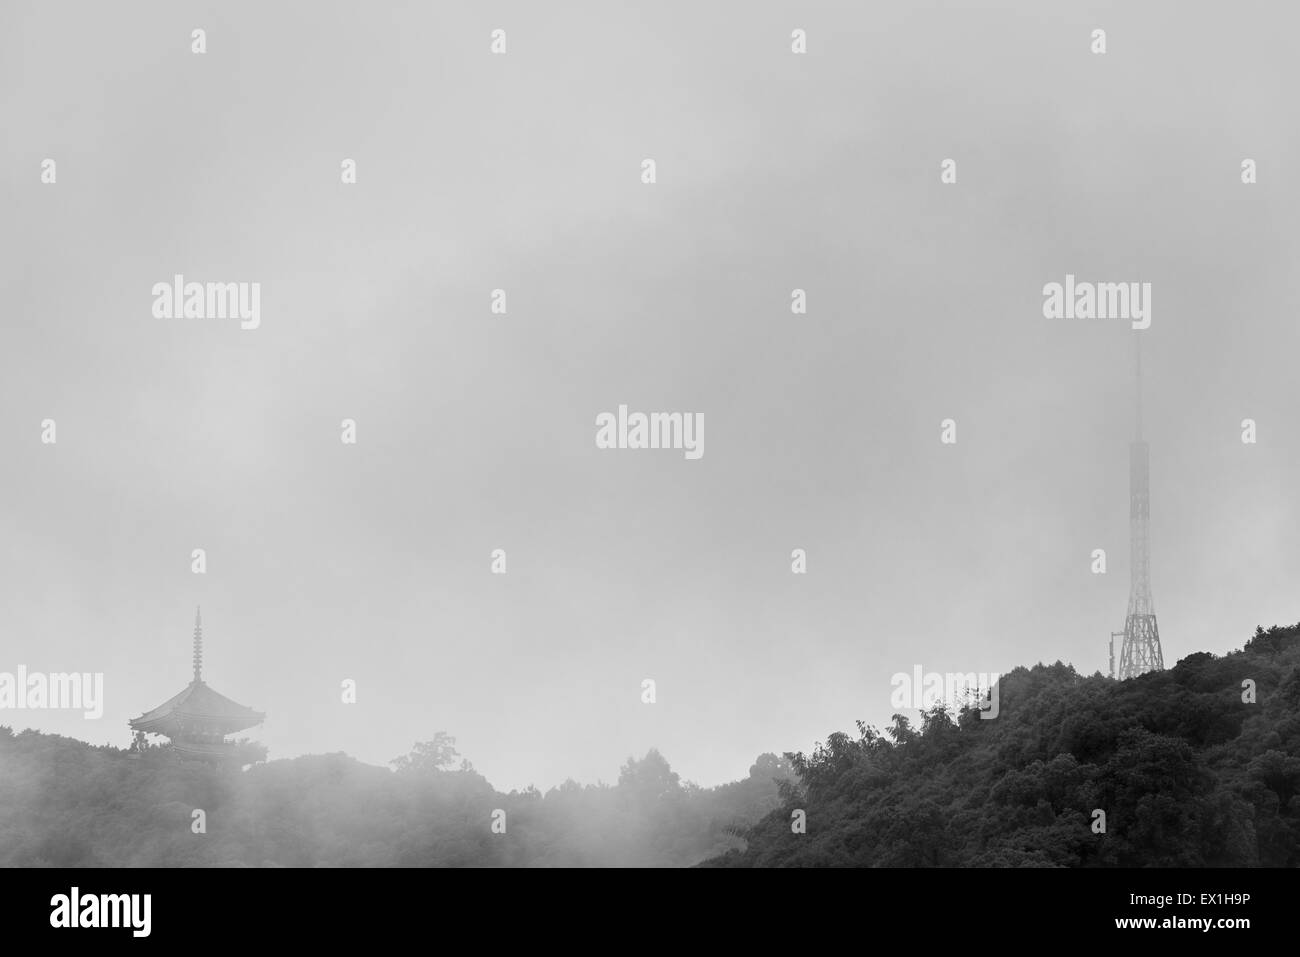 Una foto in bianco e nero di un vecchio Pagoda giapponese accanto a una moderna torre della radio sulla cima di una montagna in una piovosa, nebbioso giorno. Foto Stock